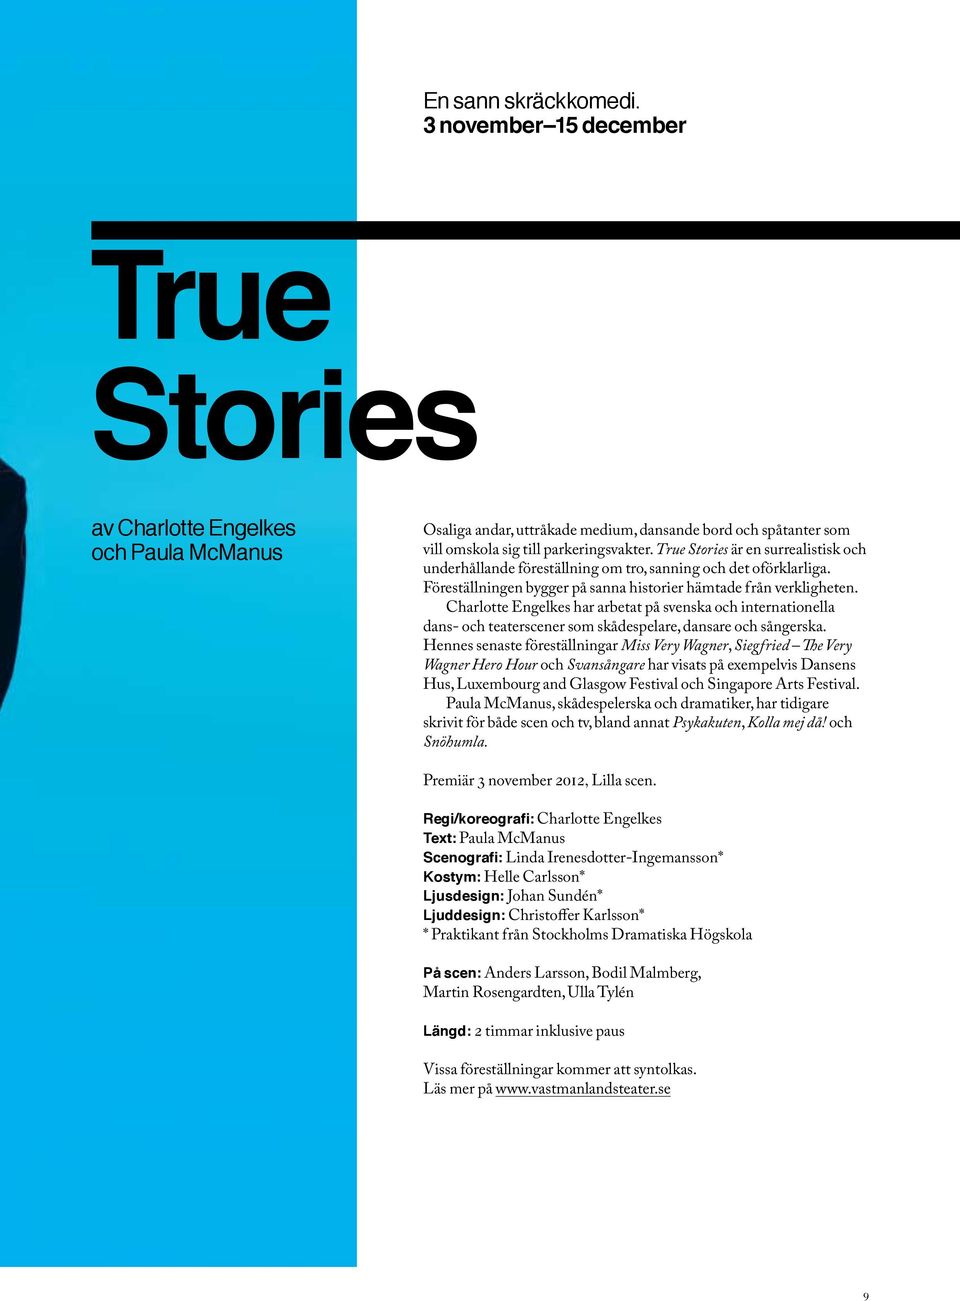 True Stories är en surrealistisk och underhållande föreställning om tro, sanning och det oförklarliga. Föreställningen bygger på sanna historier hämtade från verkligheten.